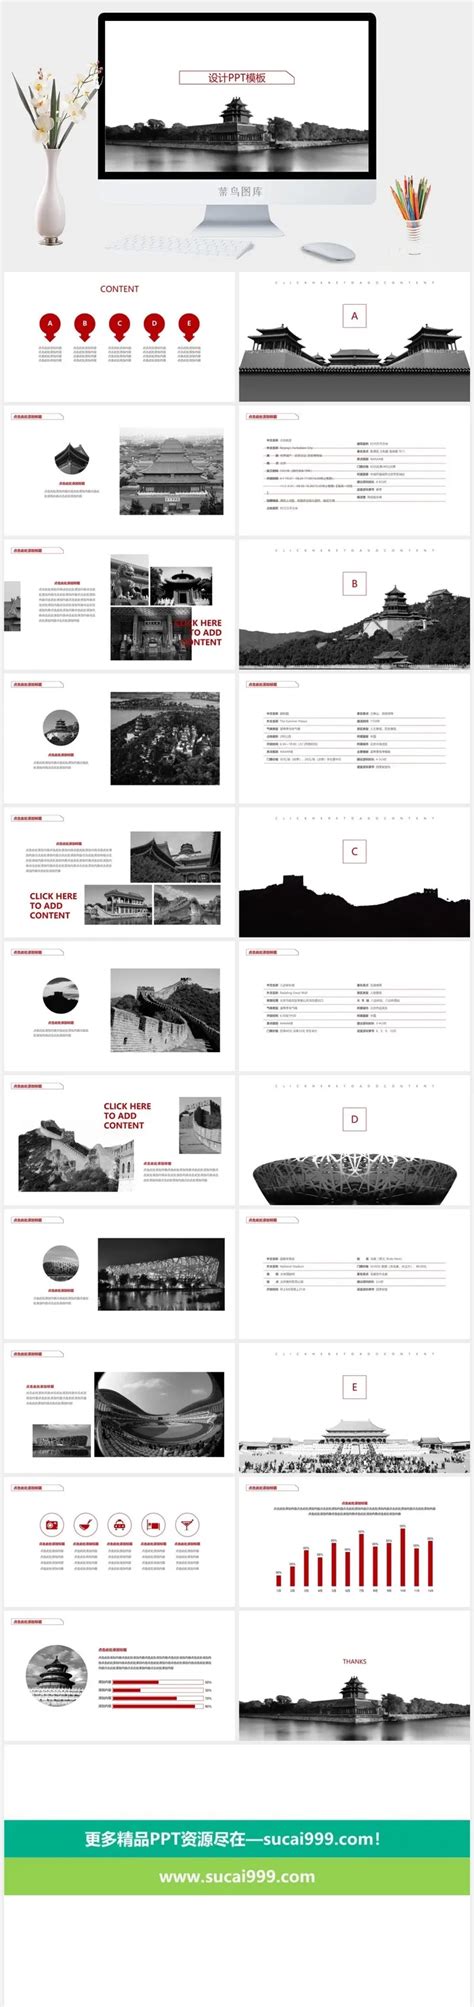 北京旅行图片-北京旅行素材、PPT模板 - 天天素材库